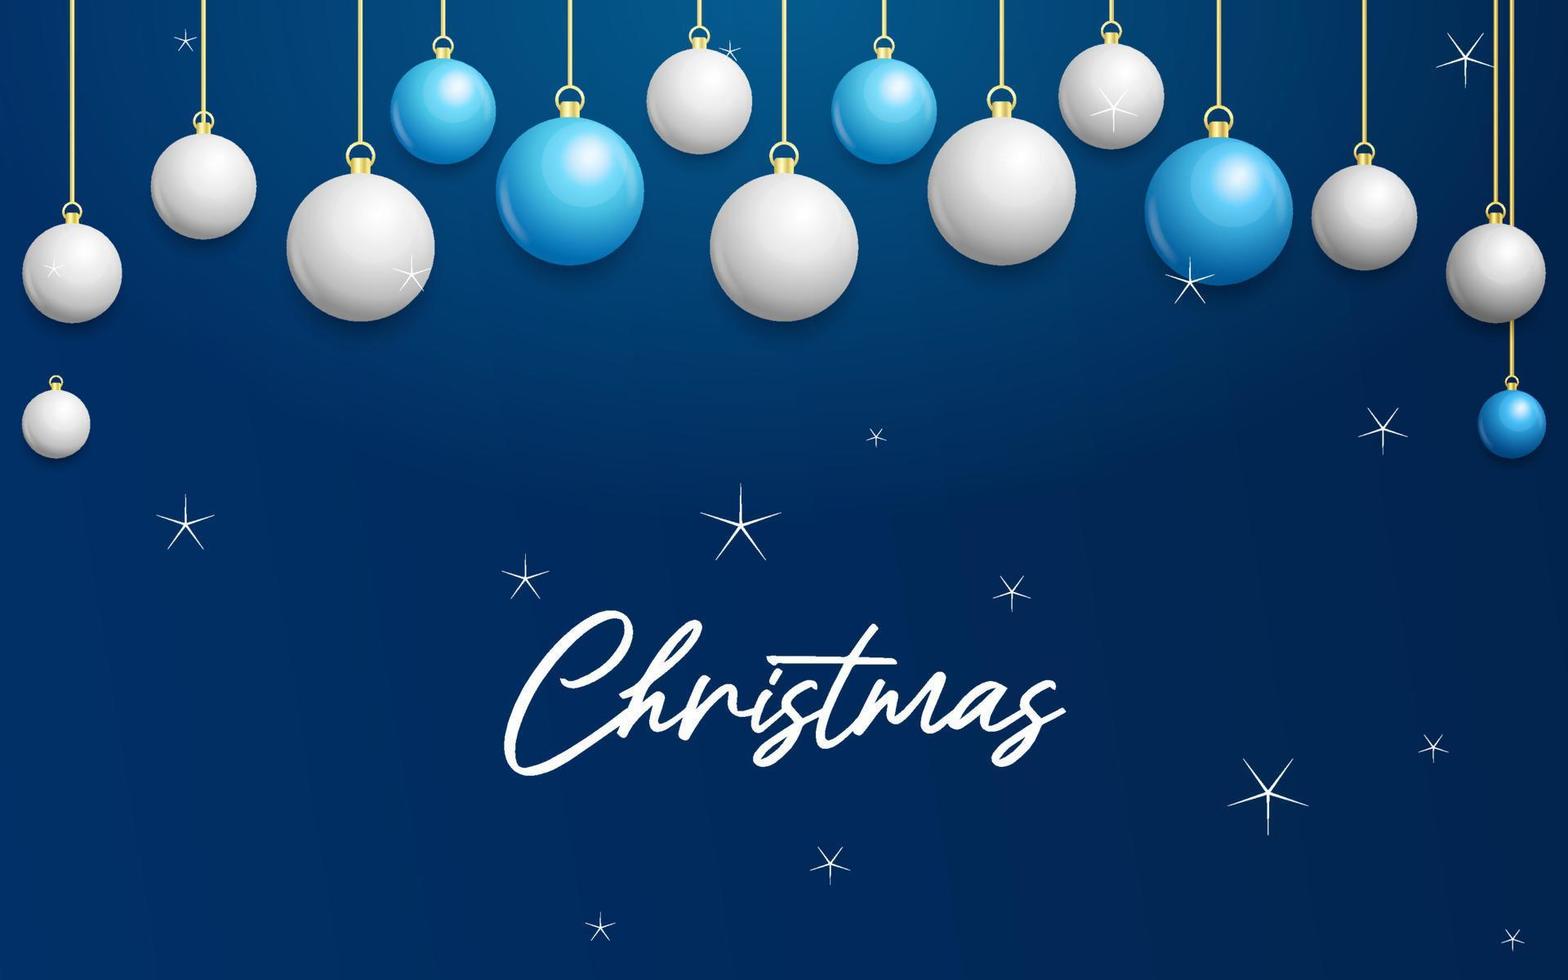 fondo azul navideño con bolas colgantes blancas y plateadas brillantes. feliz navidad tarjeta de felicitacion vector